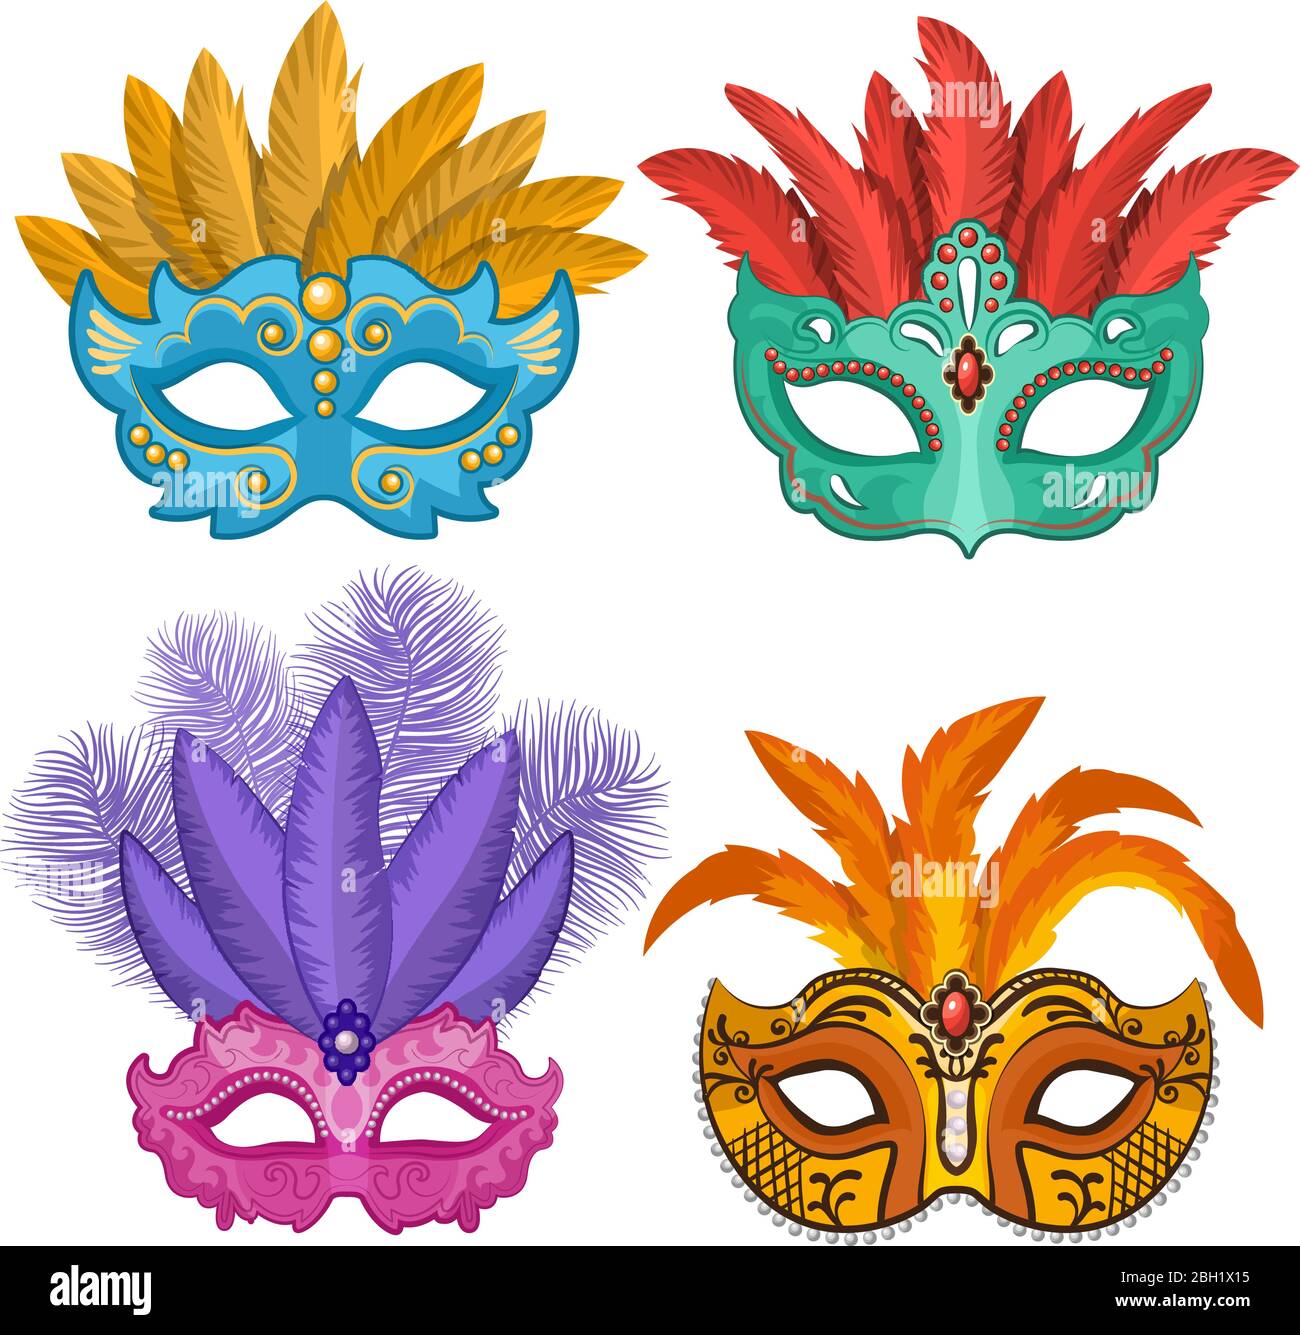 Cuadros coloreados de carnavales o máscaras de teatro con plumas.  Ilustraciones vectoriales en estilo de dibujos animados. Máscara de disfraz  de carnaval y mascarada, veneciana Imagen Vector de stock - Alamy